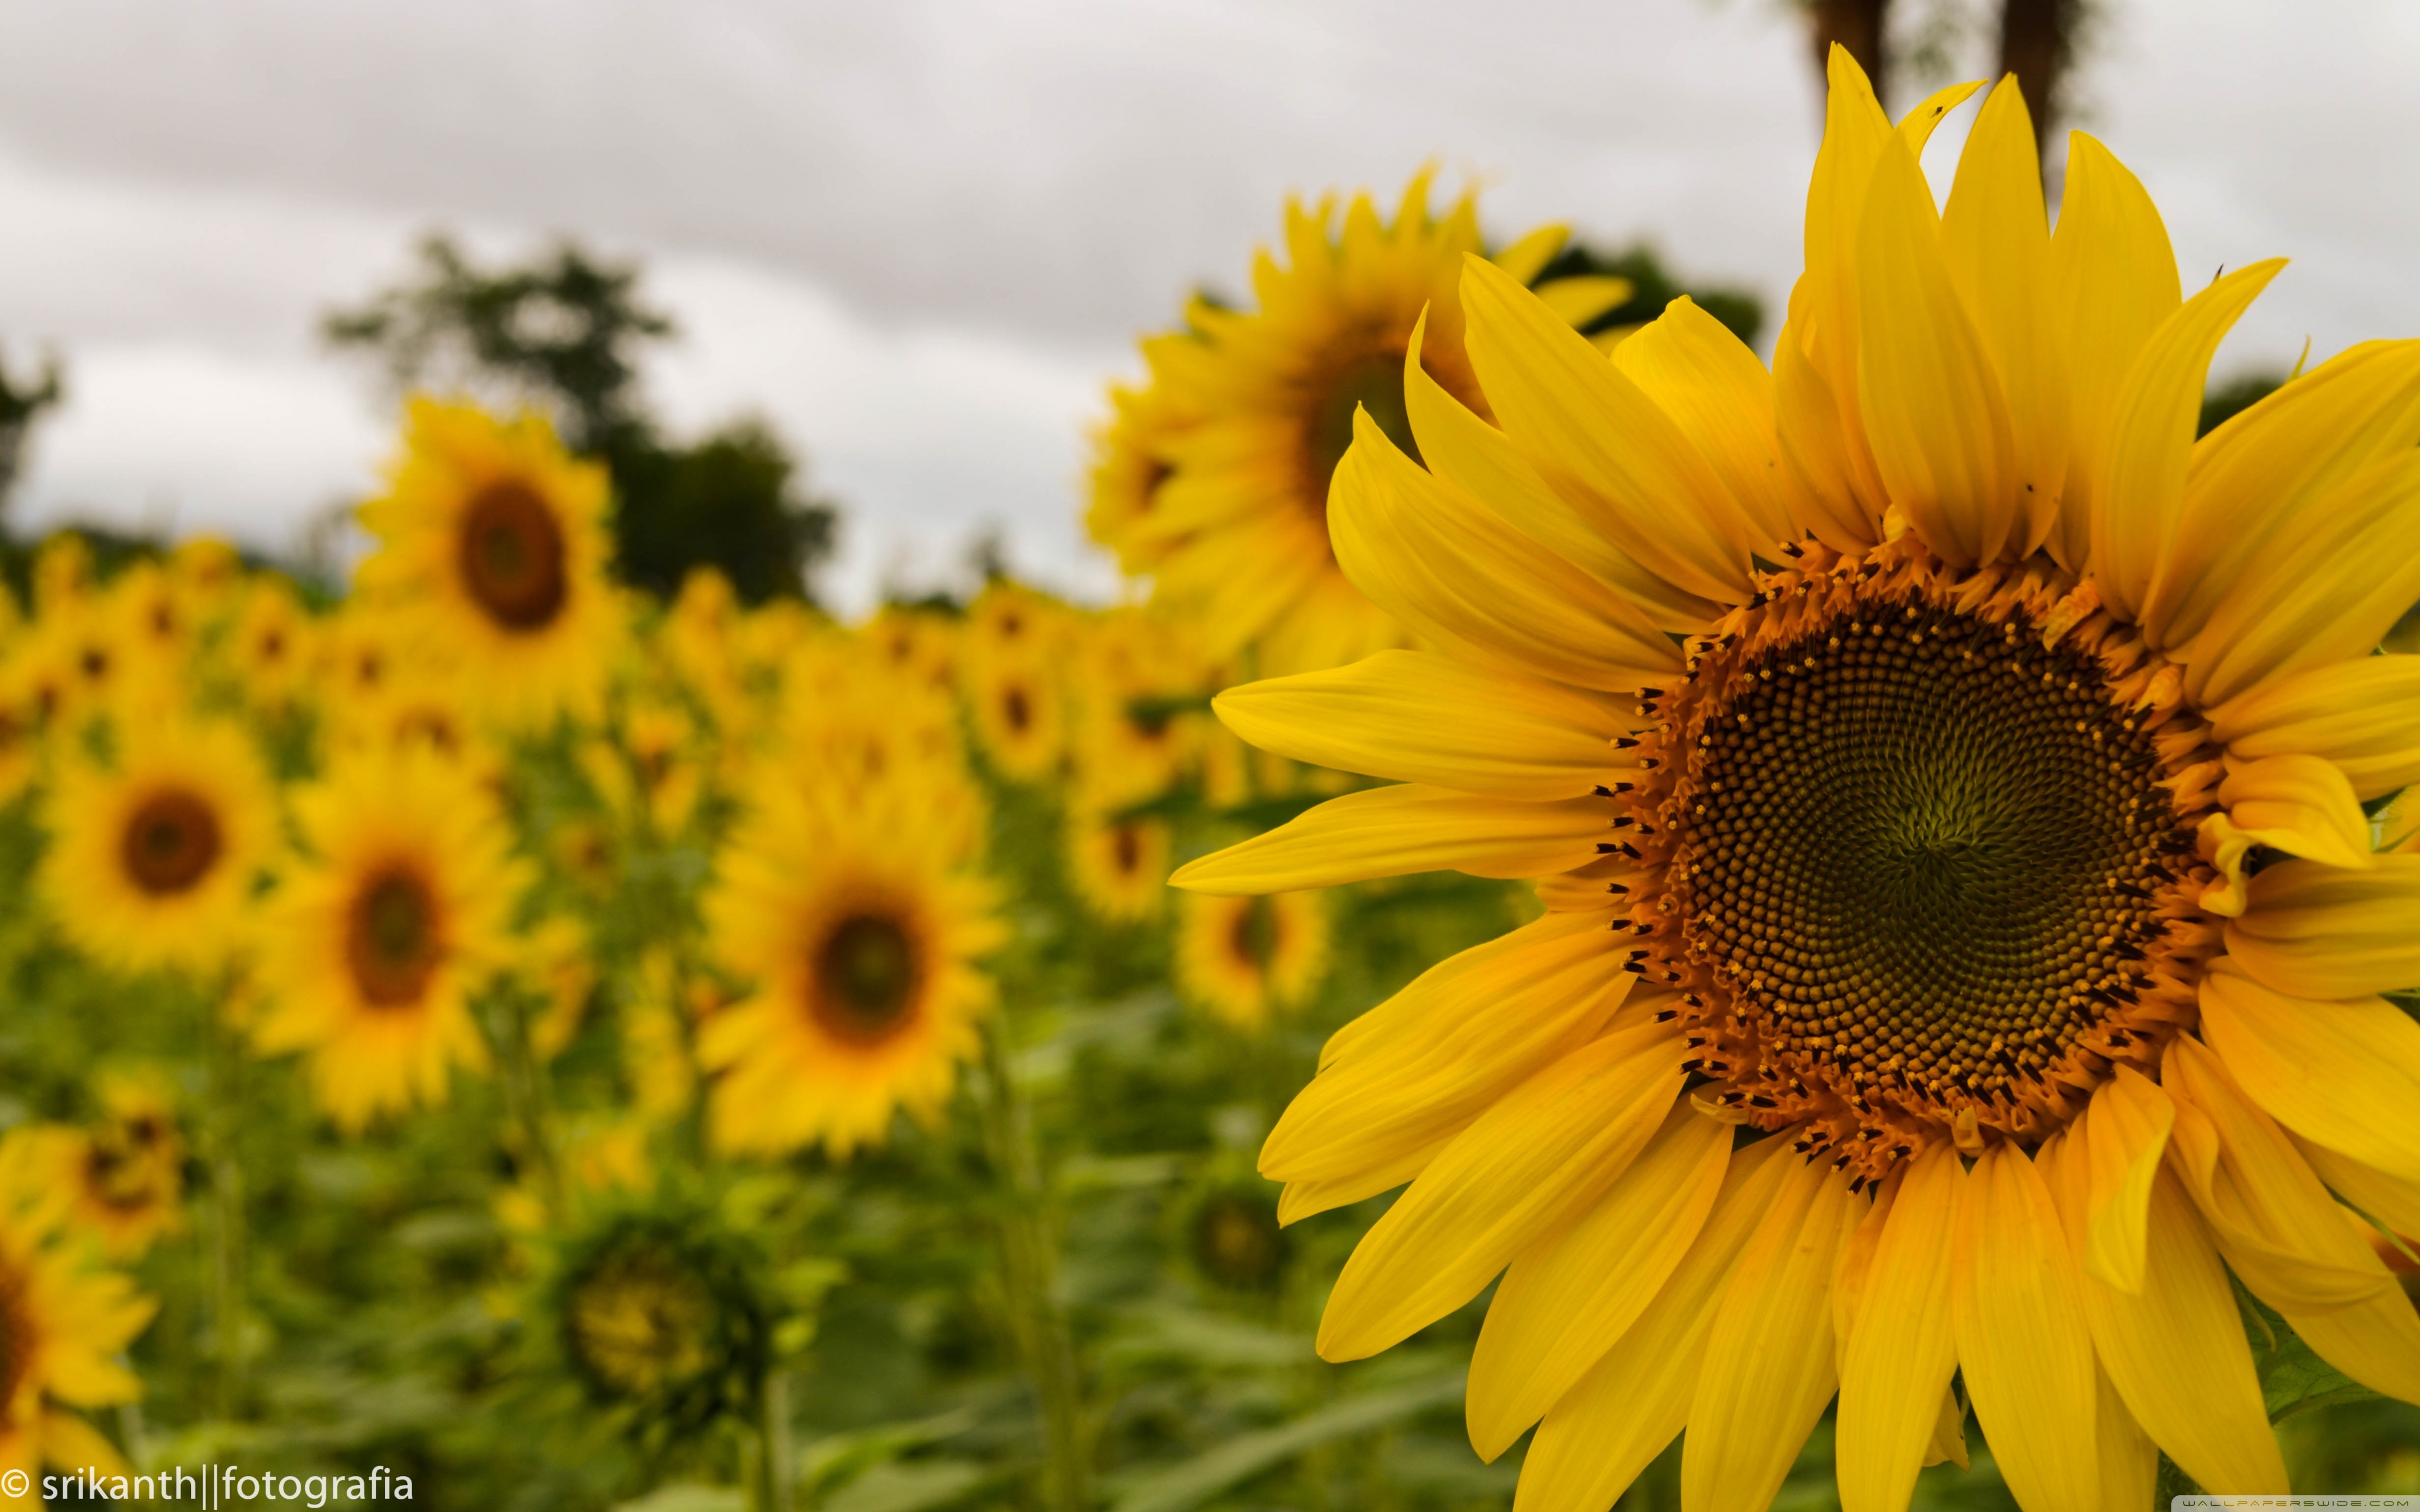 Yellow Mellow Sunflower 4k HD Desktop Wallpaper For Ultra